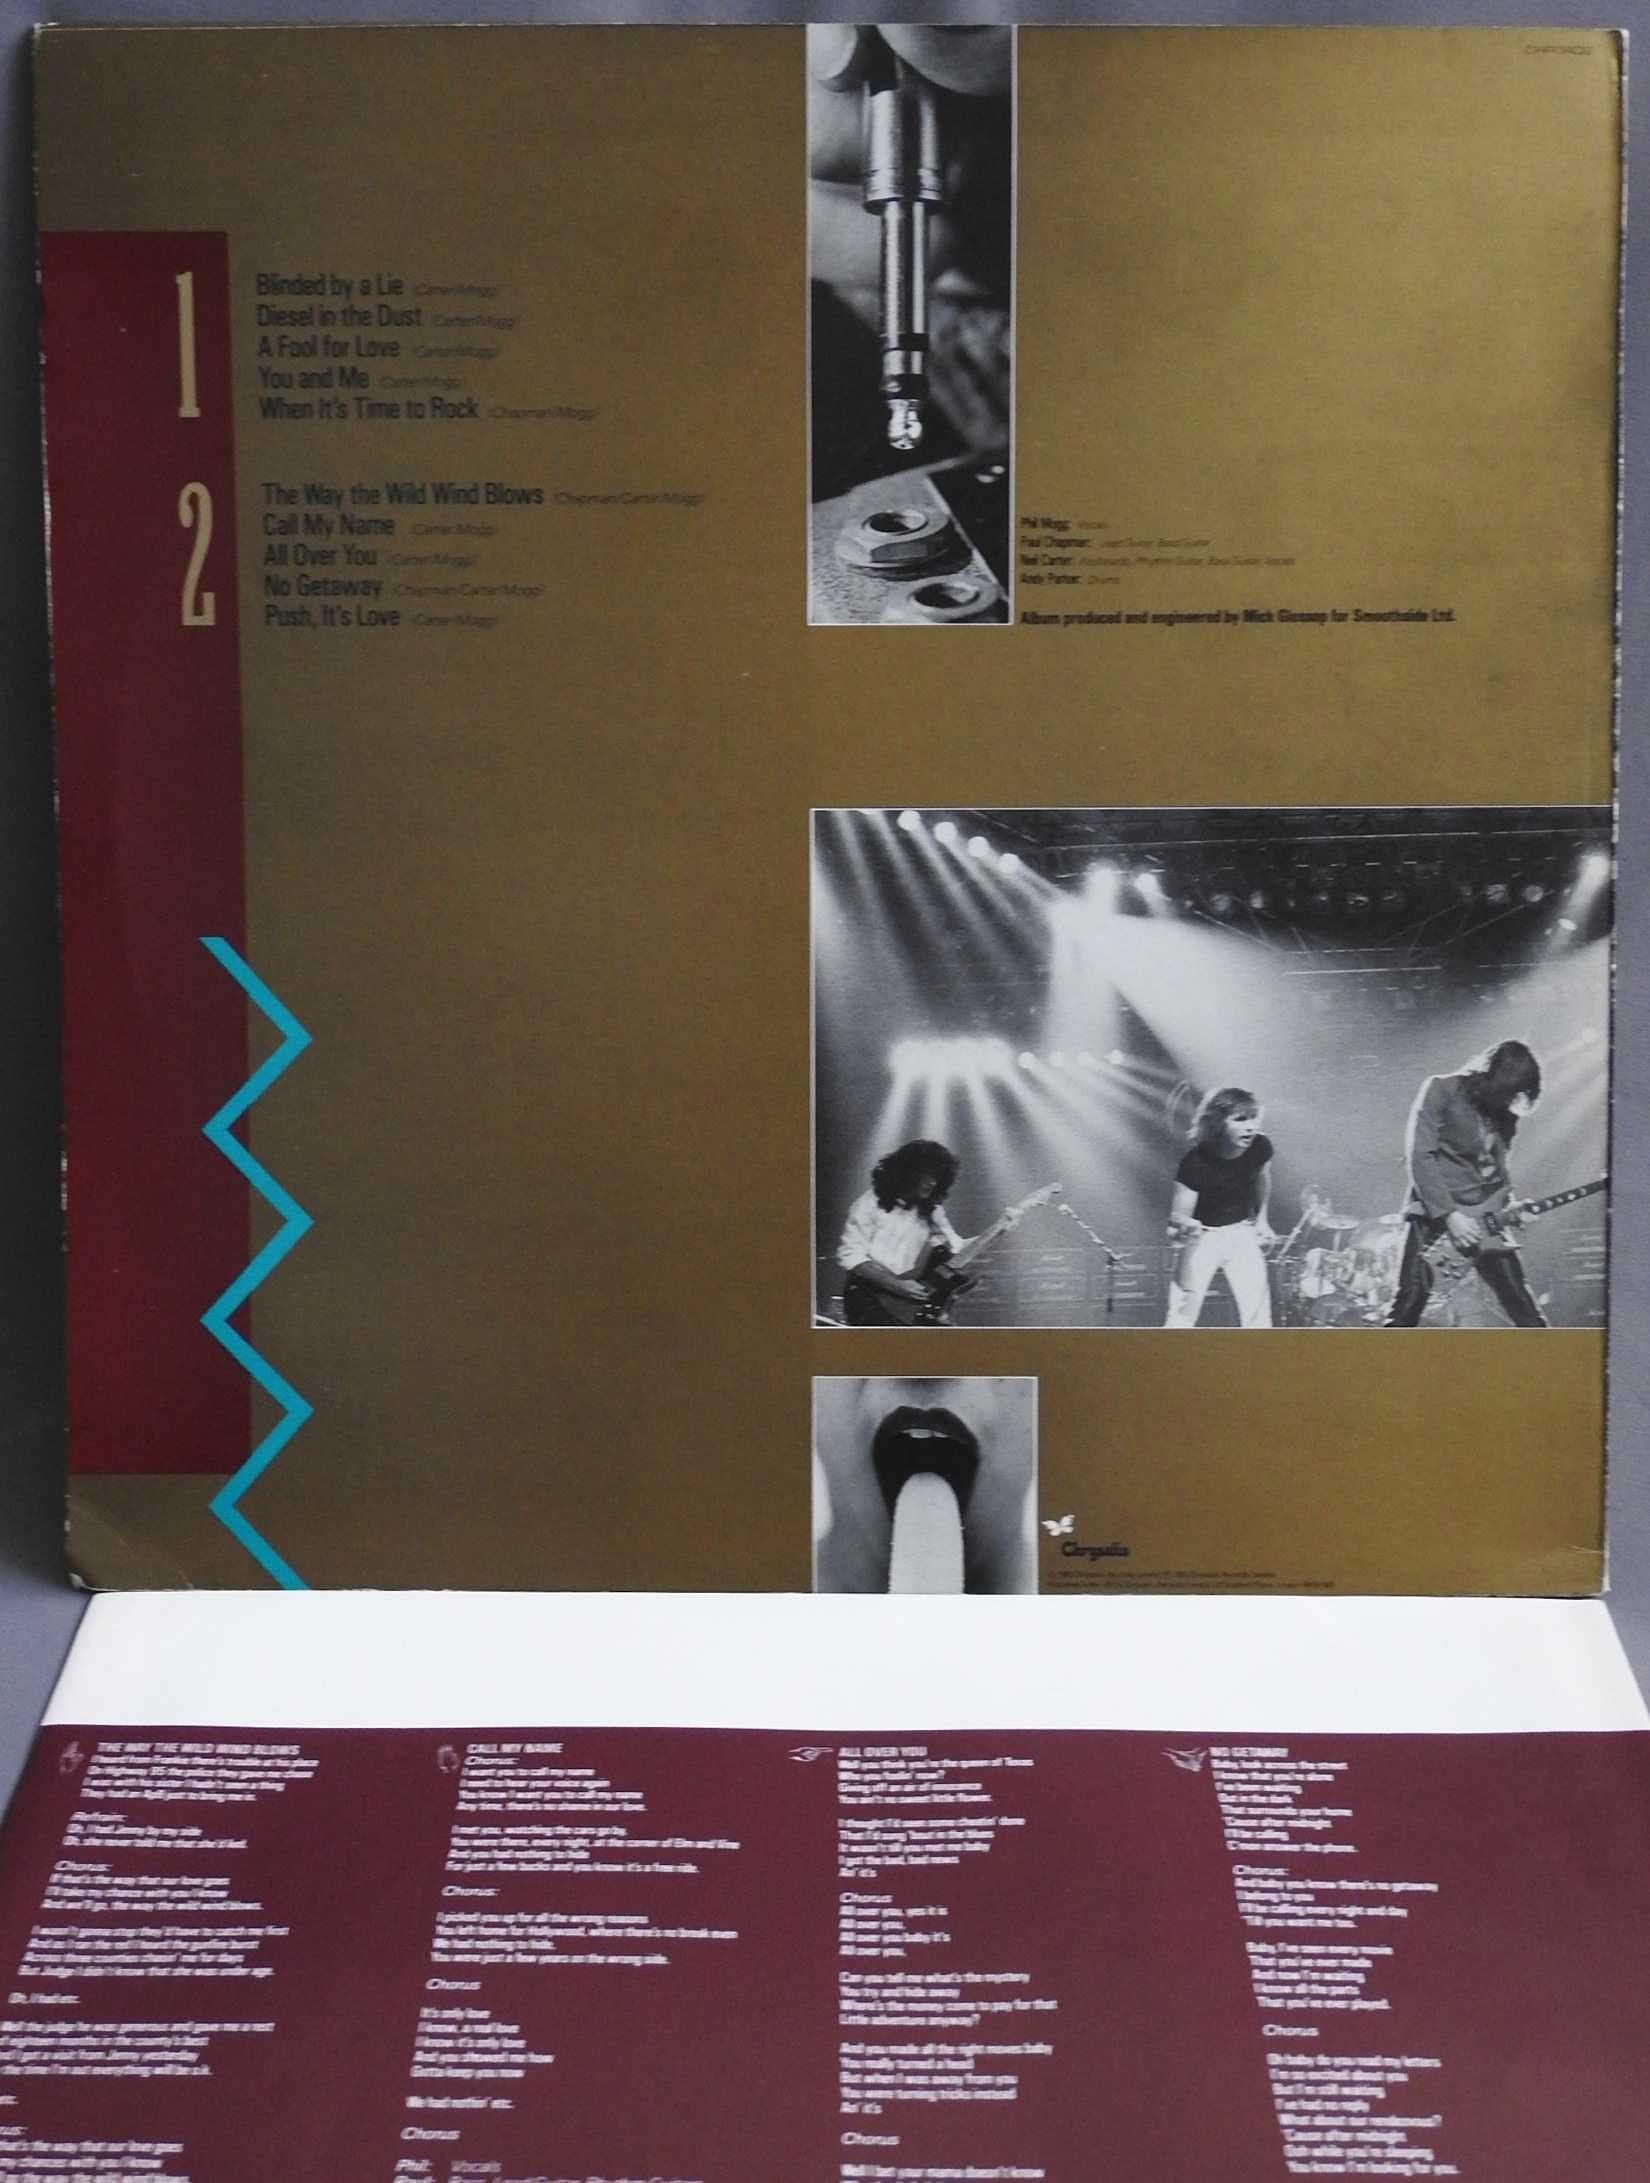 UFO Making Contact LP UK 1983 Британская пластинка EX 1 press оригинал